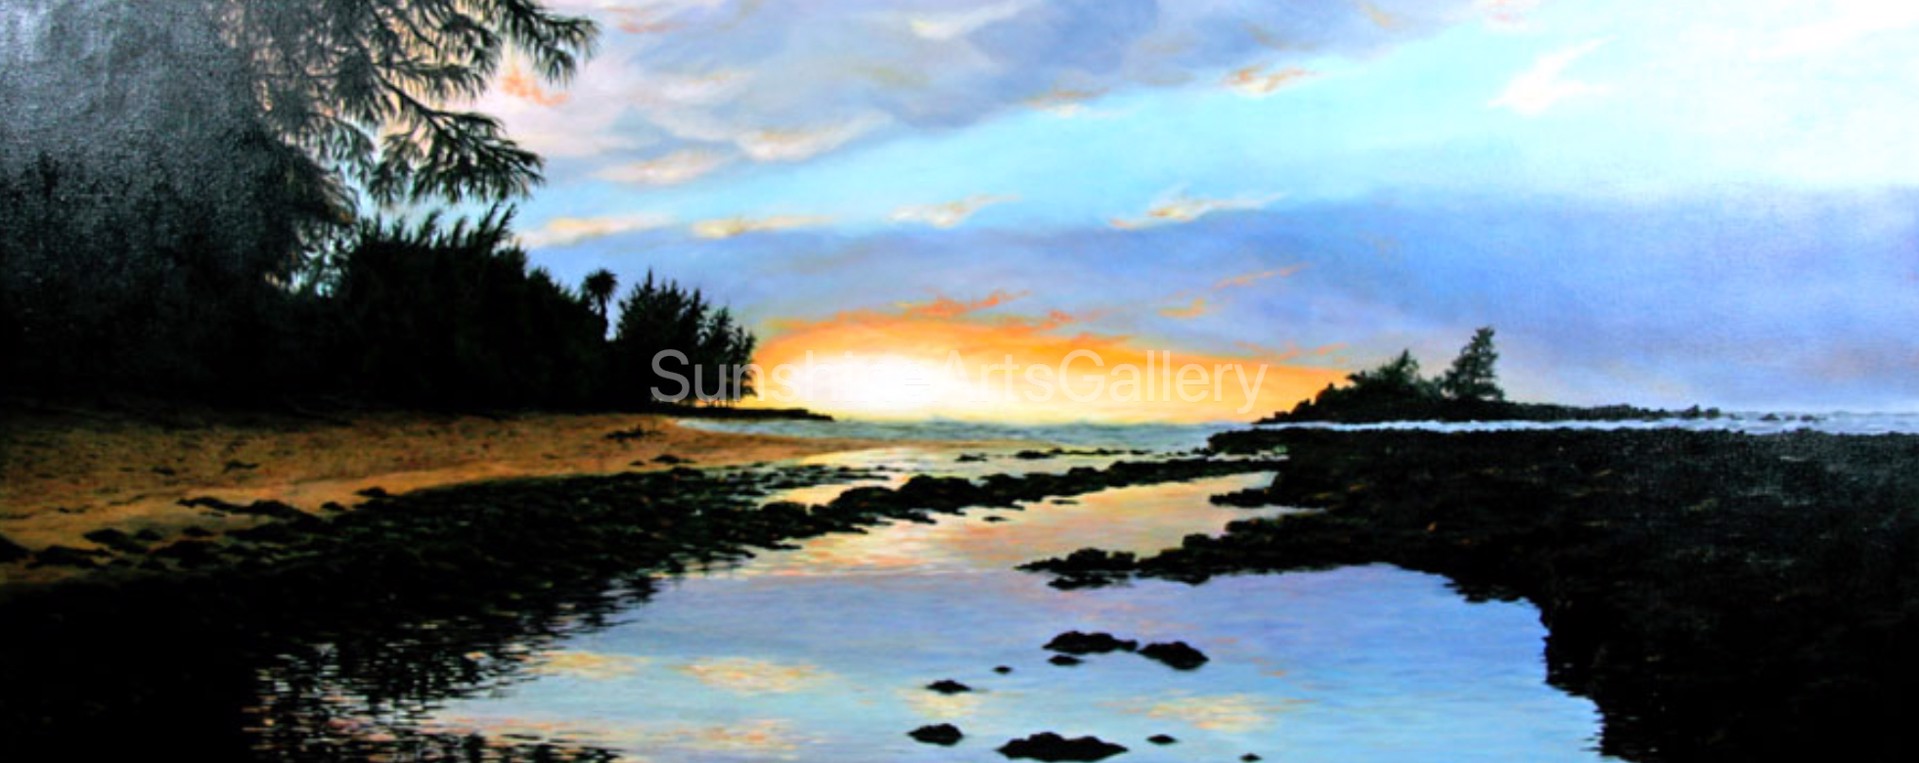 Sunset at Waiale’e Beach by Pati O'Neal